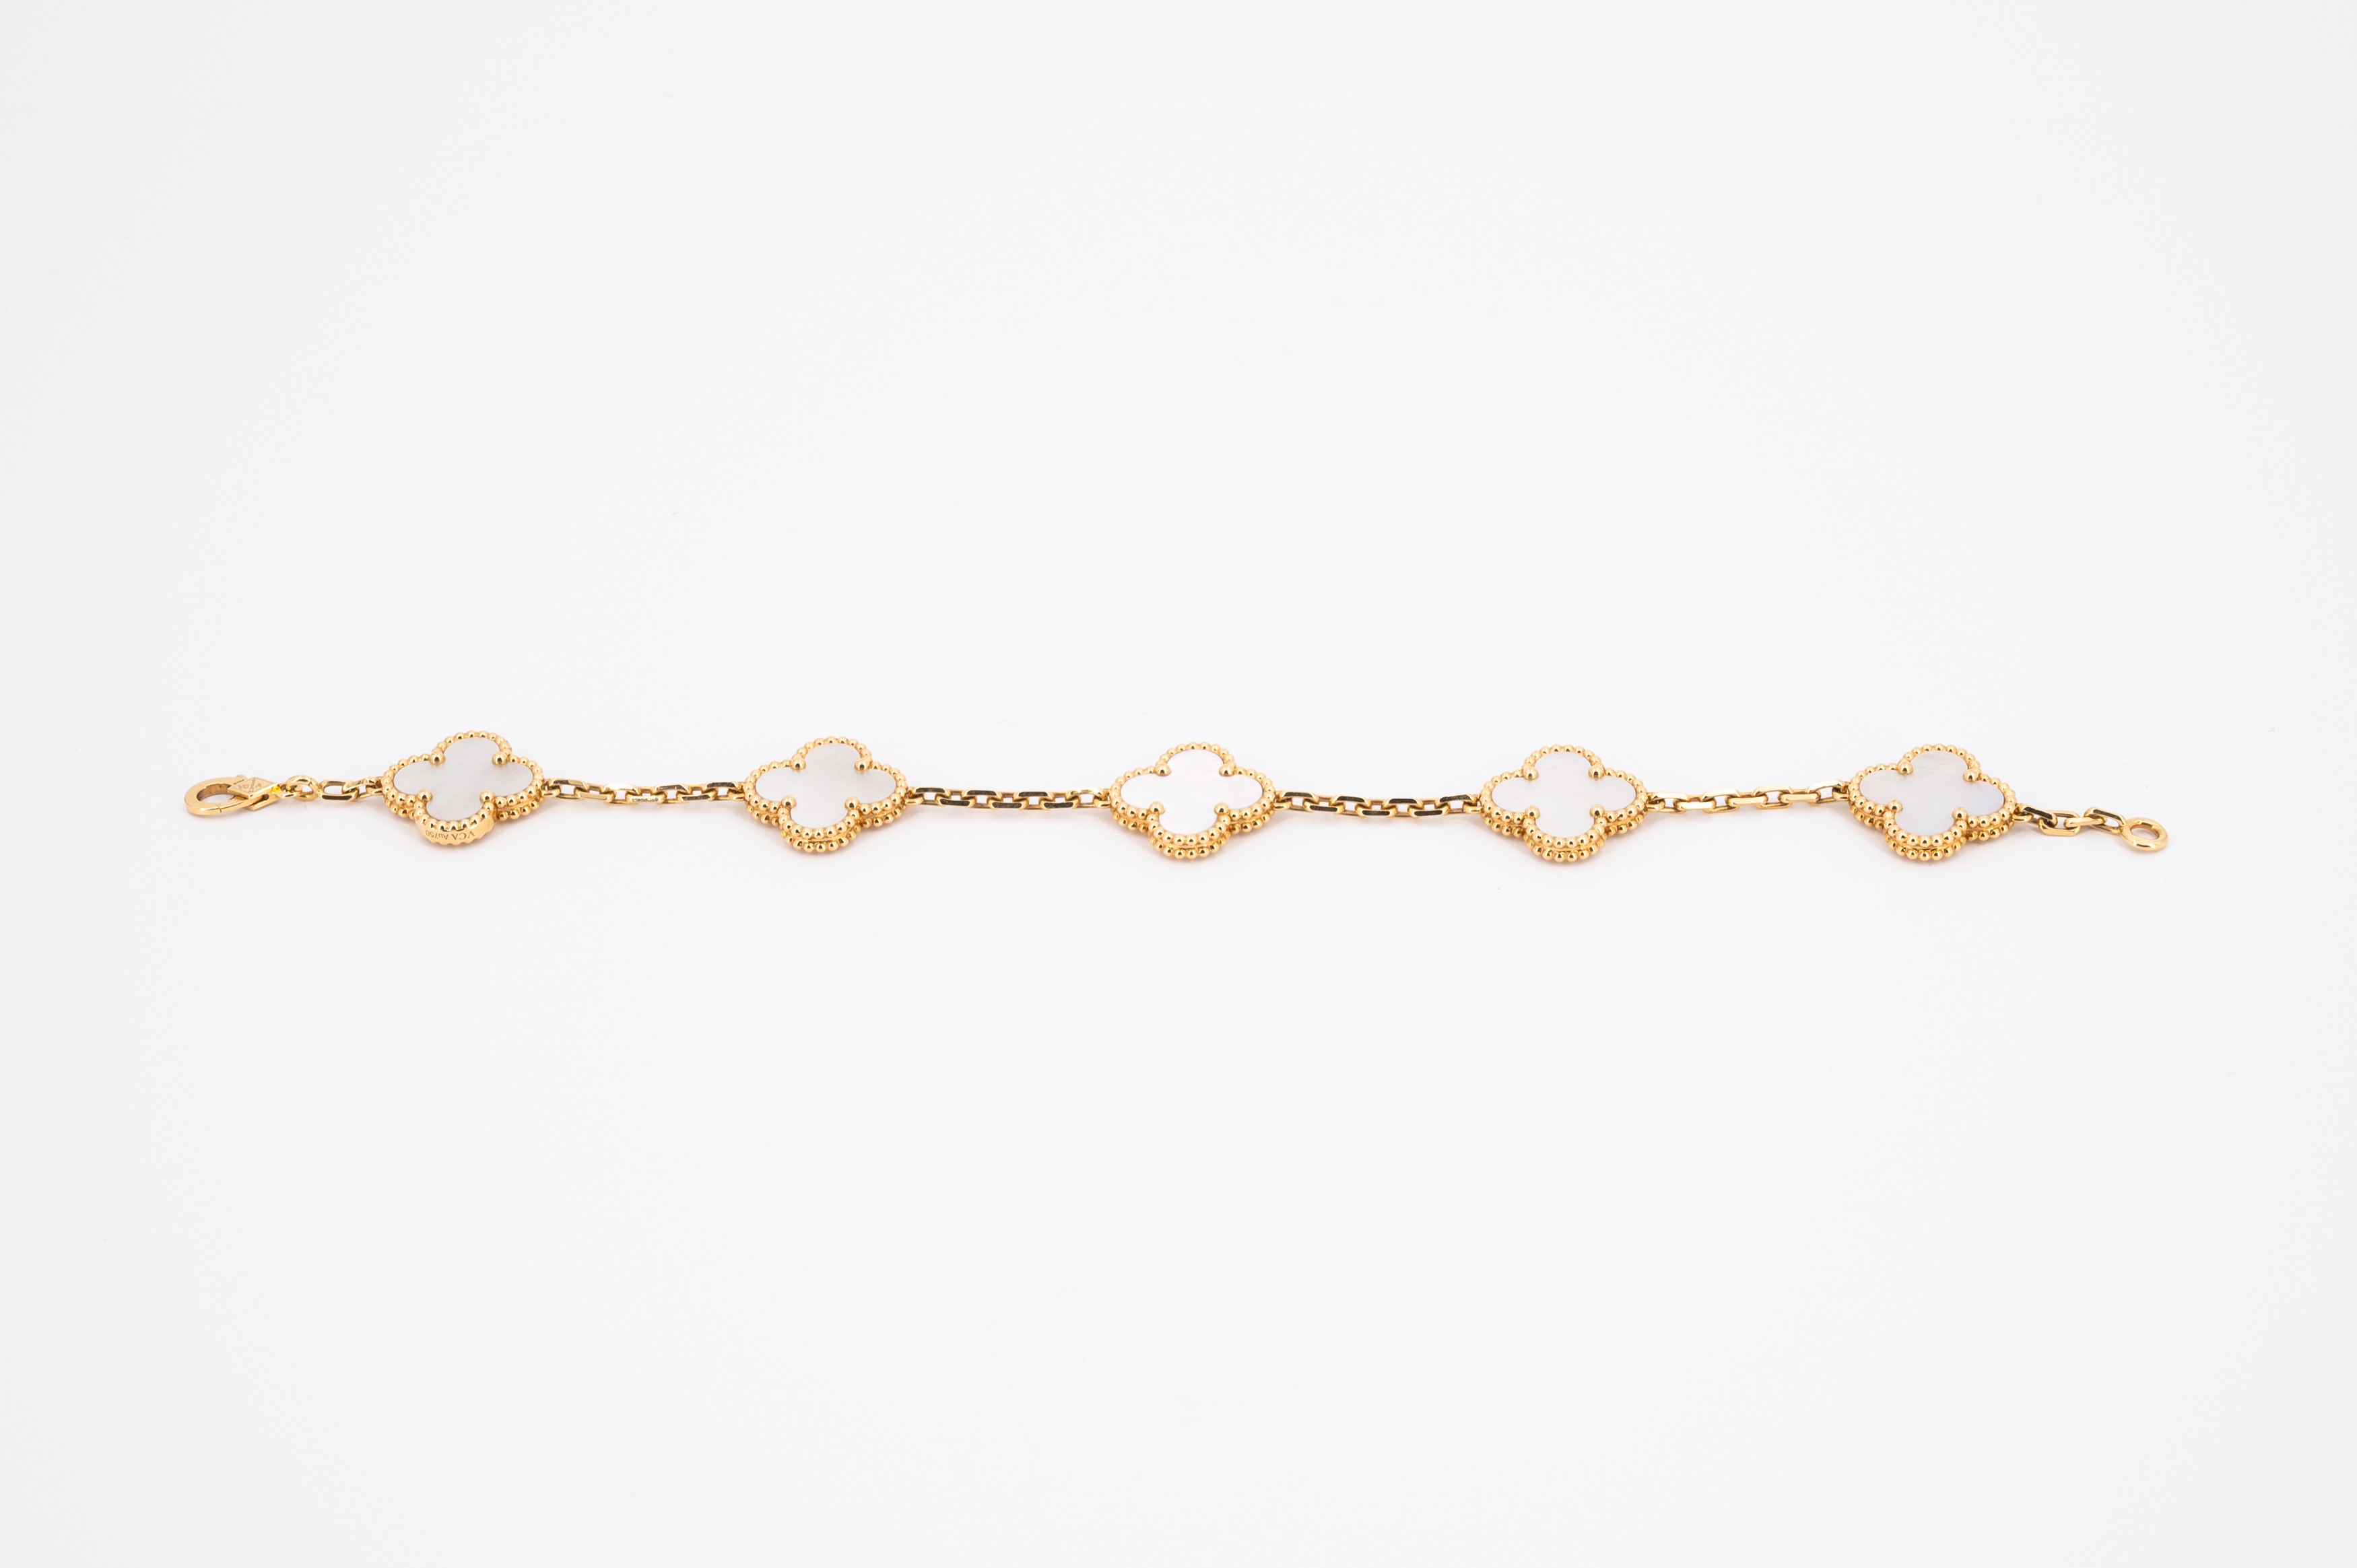 Van Cleef & Arpels: Mother-of-Pearl-Bracelet - Image 2 of 5